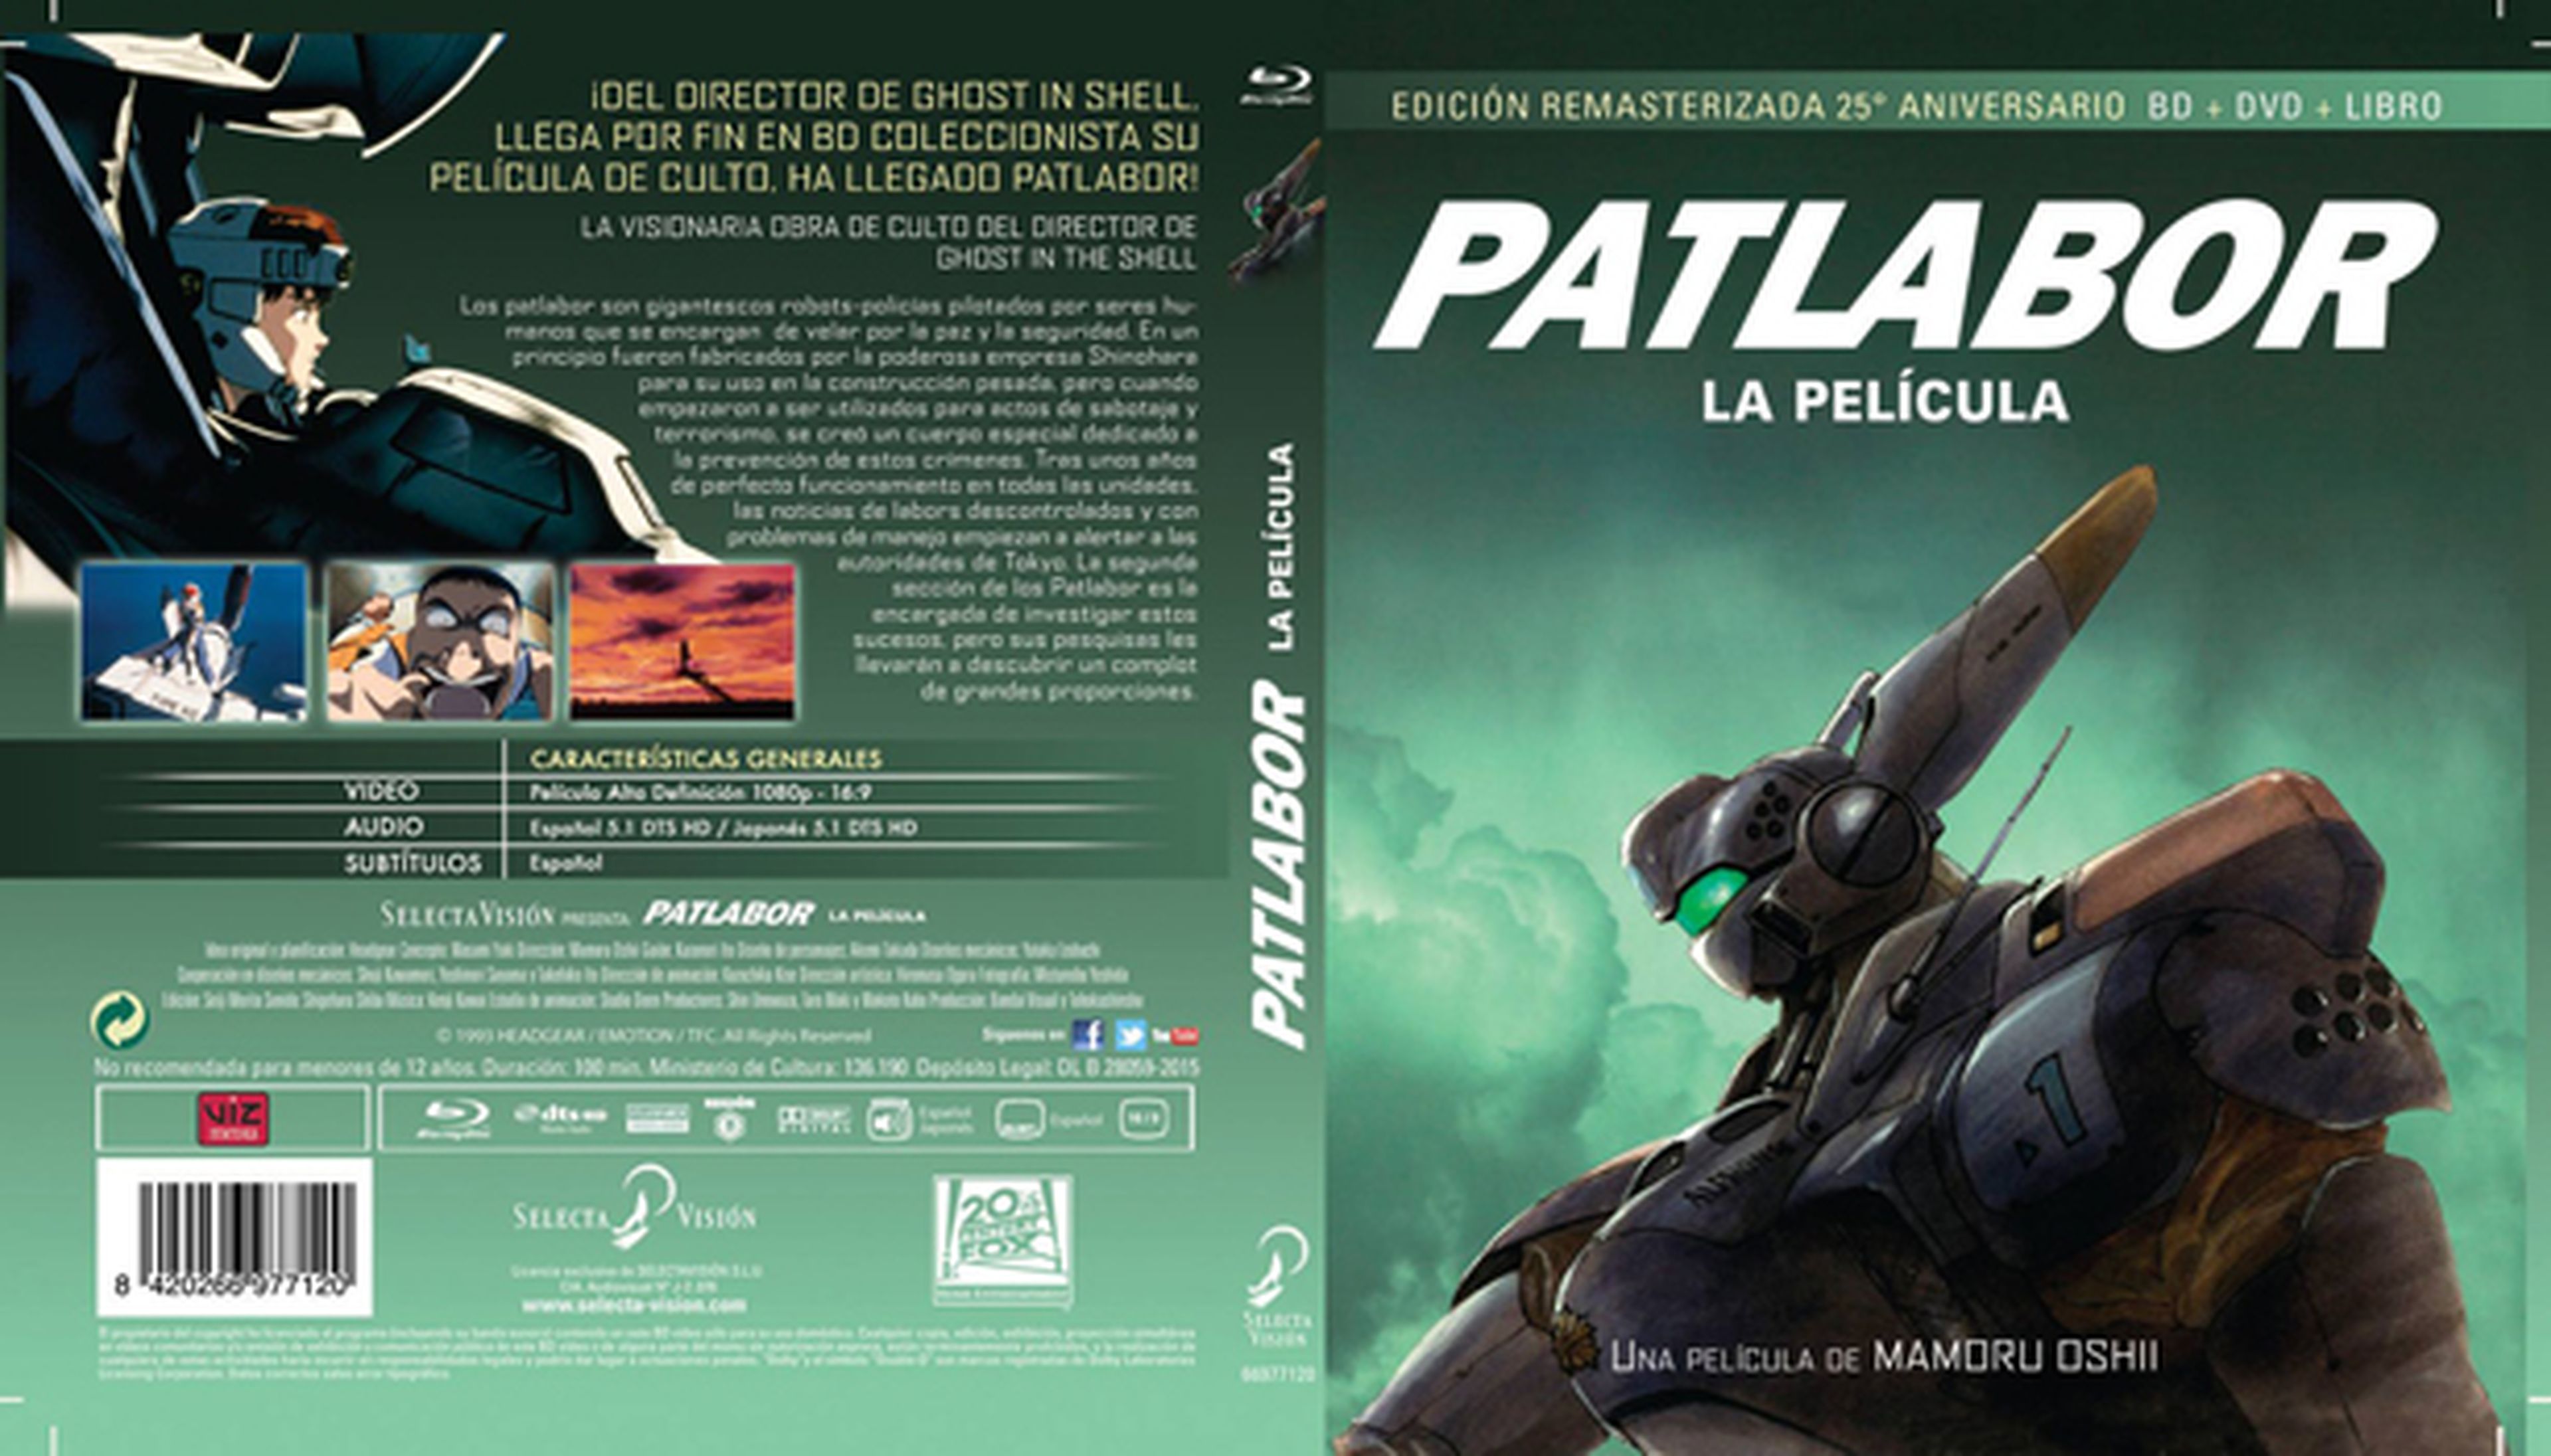 Patlabor cuenta con una edición remasterizada